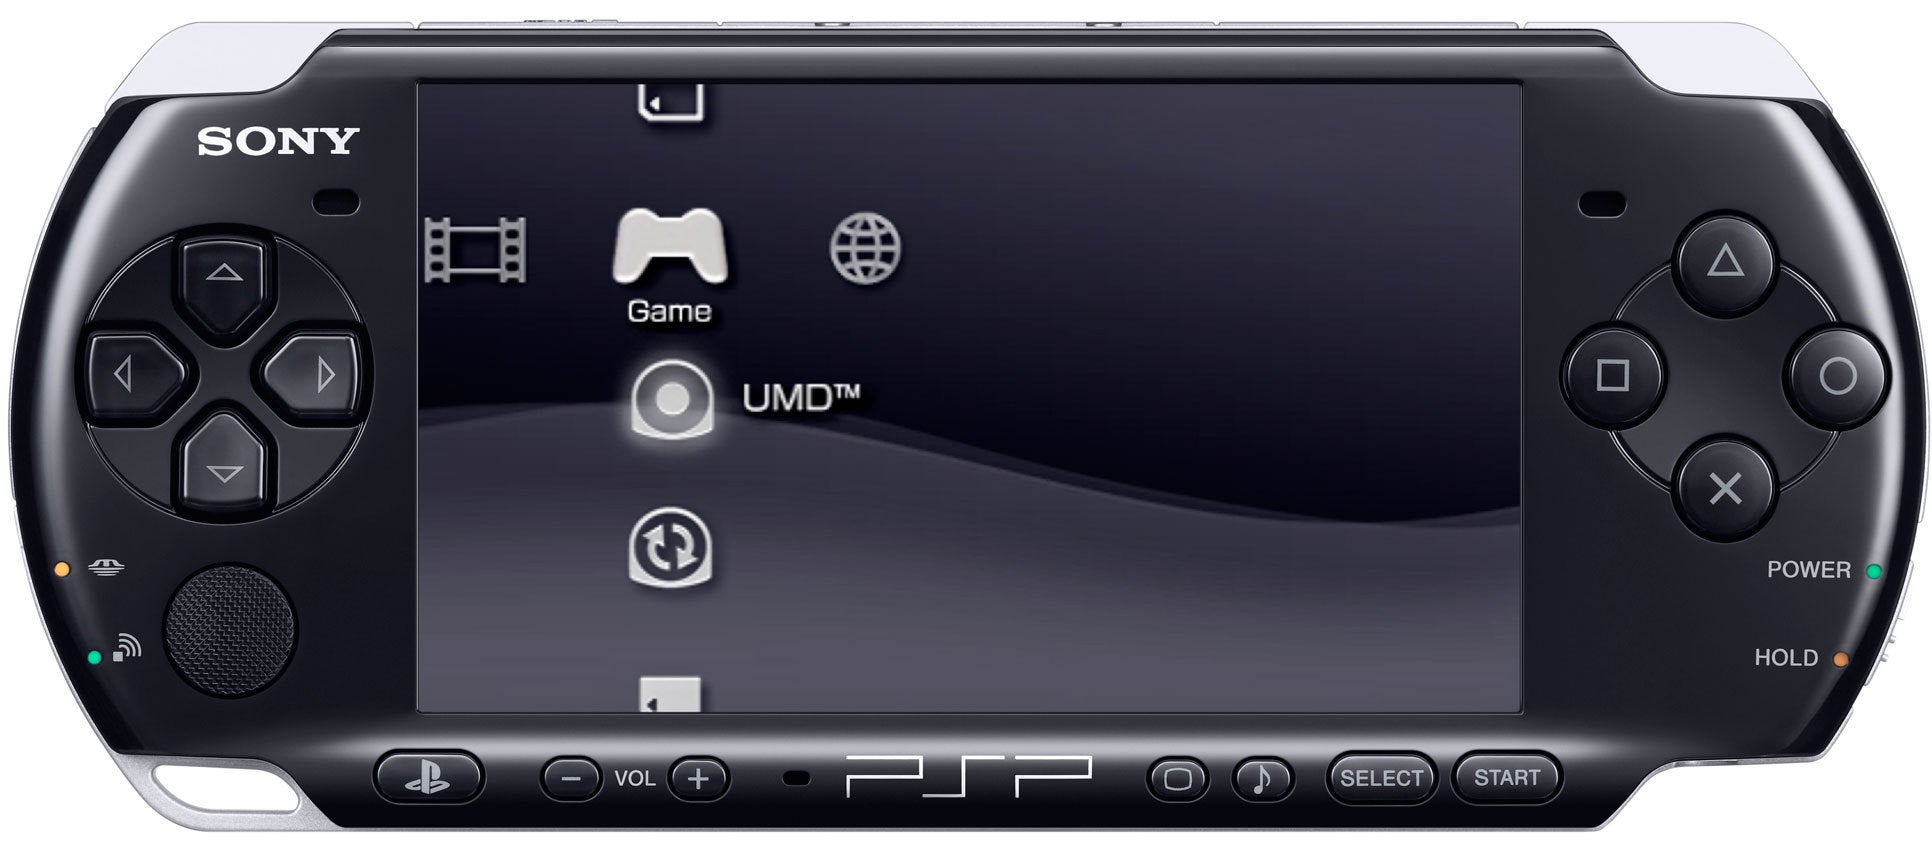 PSP-3000 | Eurogamer.net